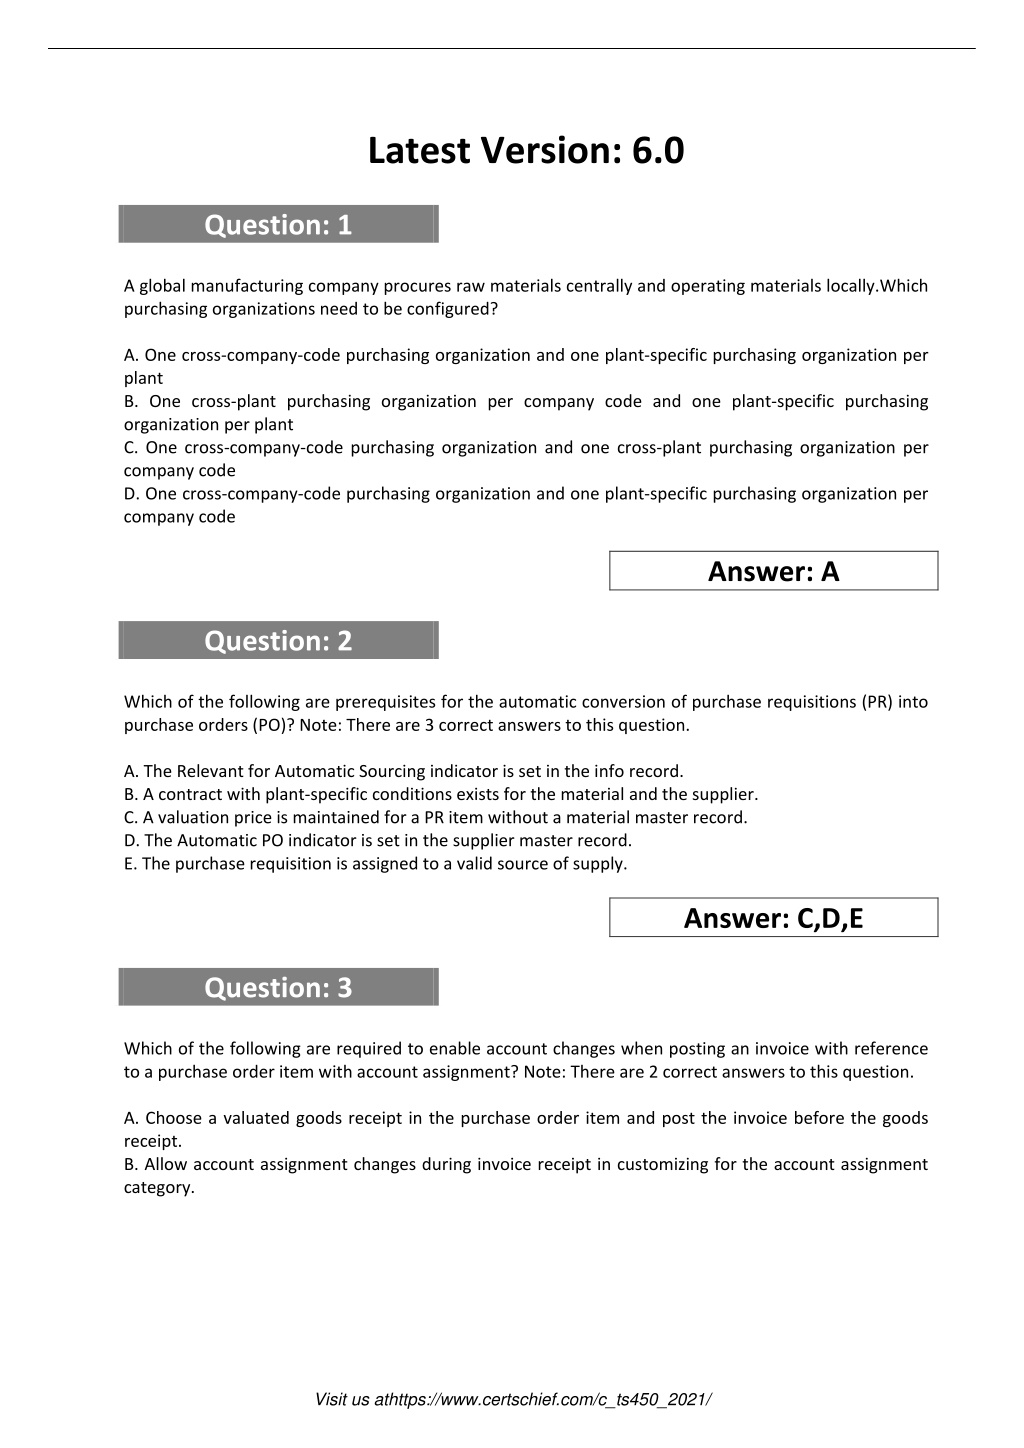 C-TS450-2021 Exam Fragen